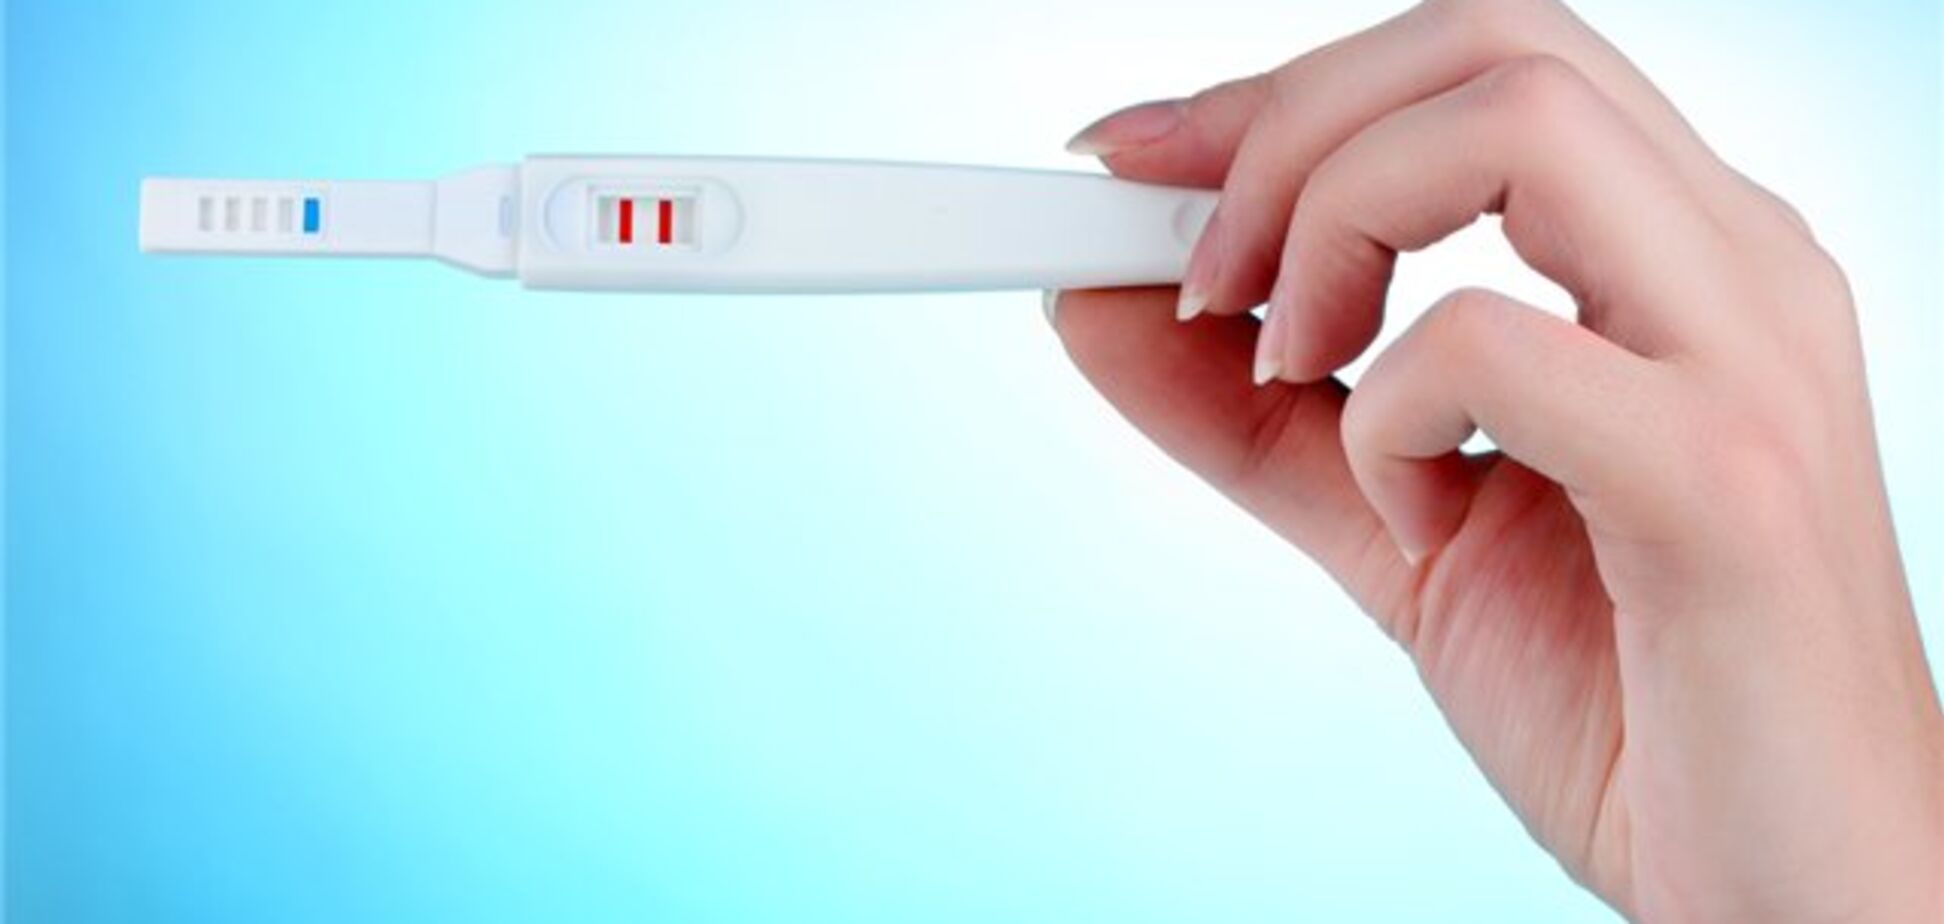 Як працює тест на вагітність: опубліковано детальне відео